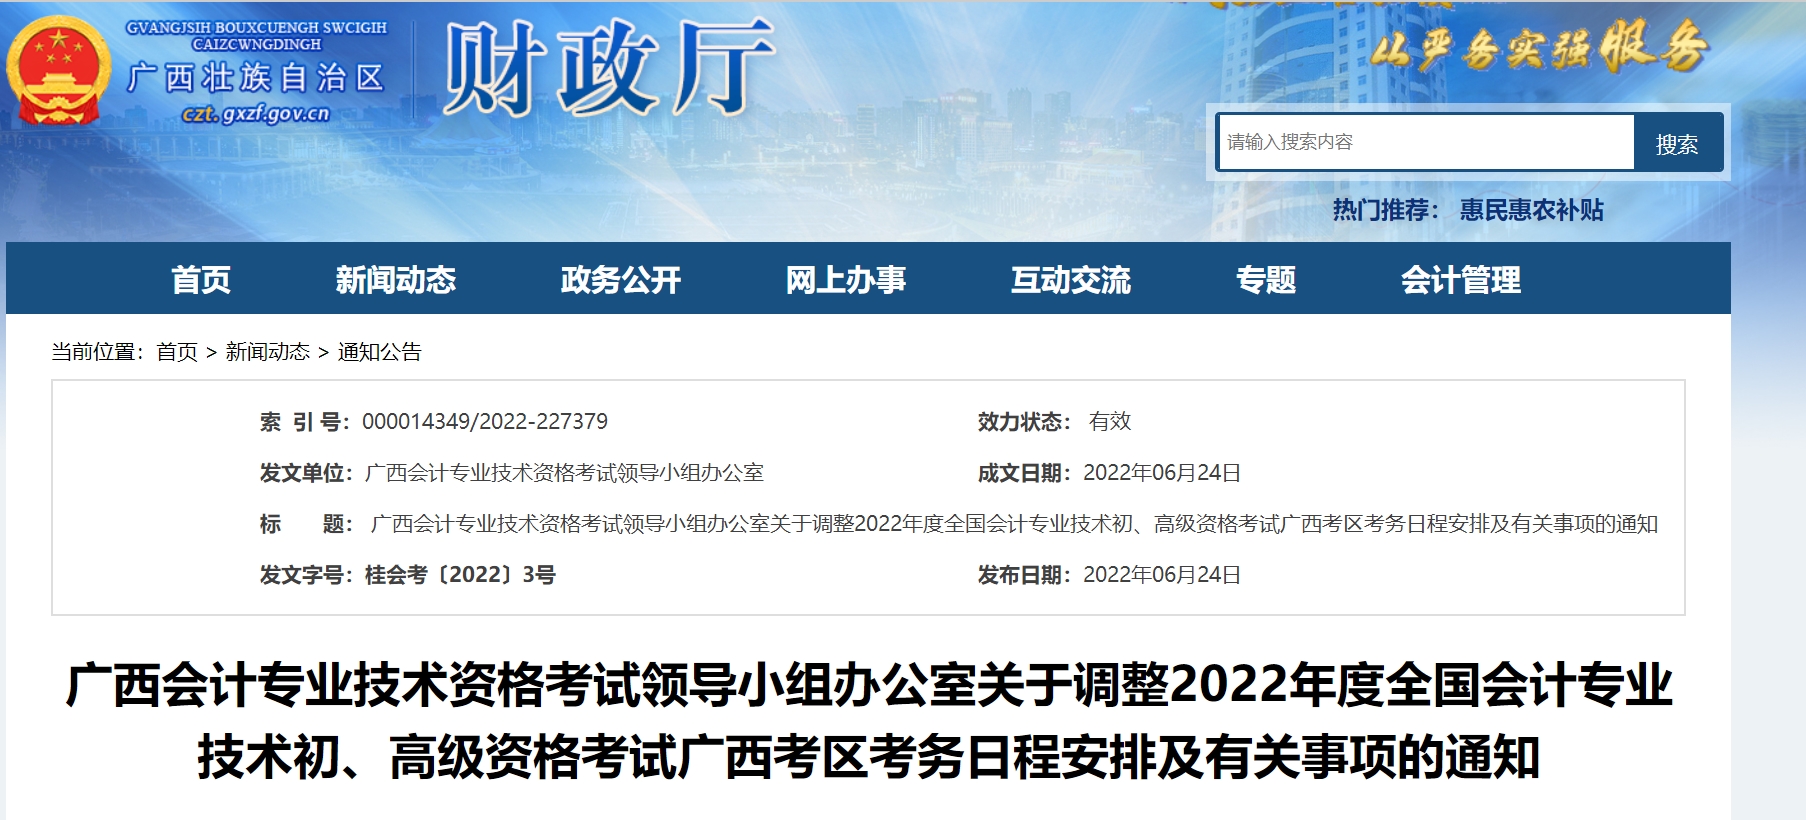 广西自治区钦州关于调整2022年度初级会计考试考务日程安排及有关事项的通知